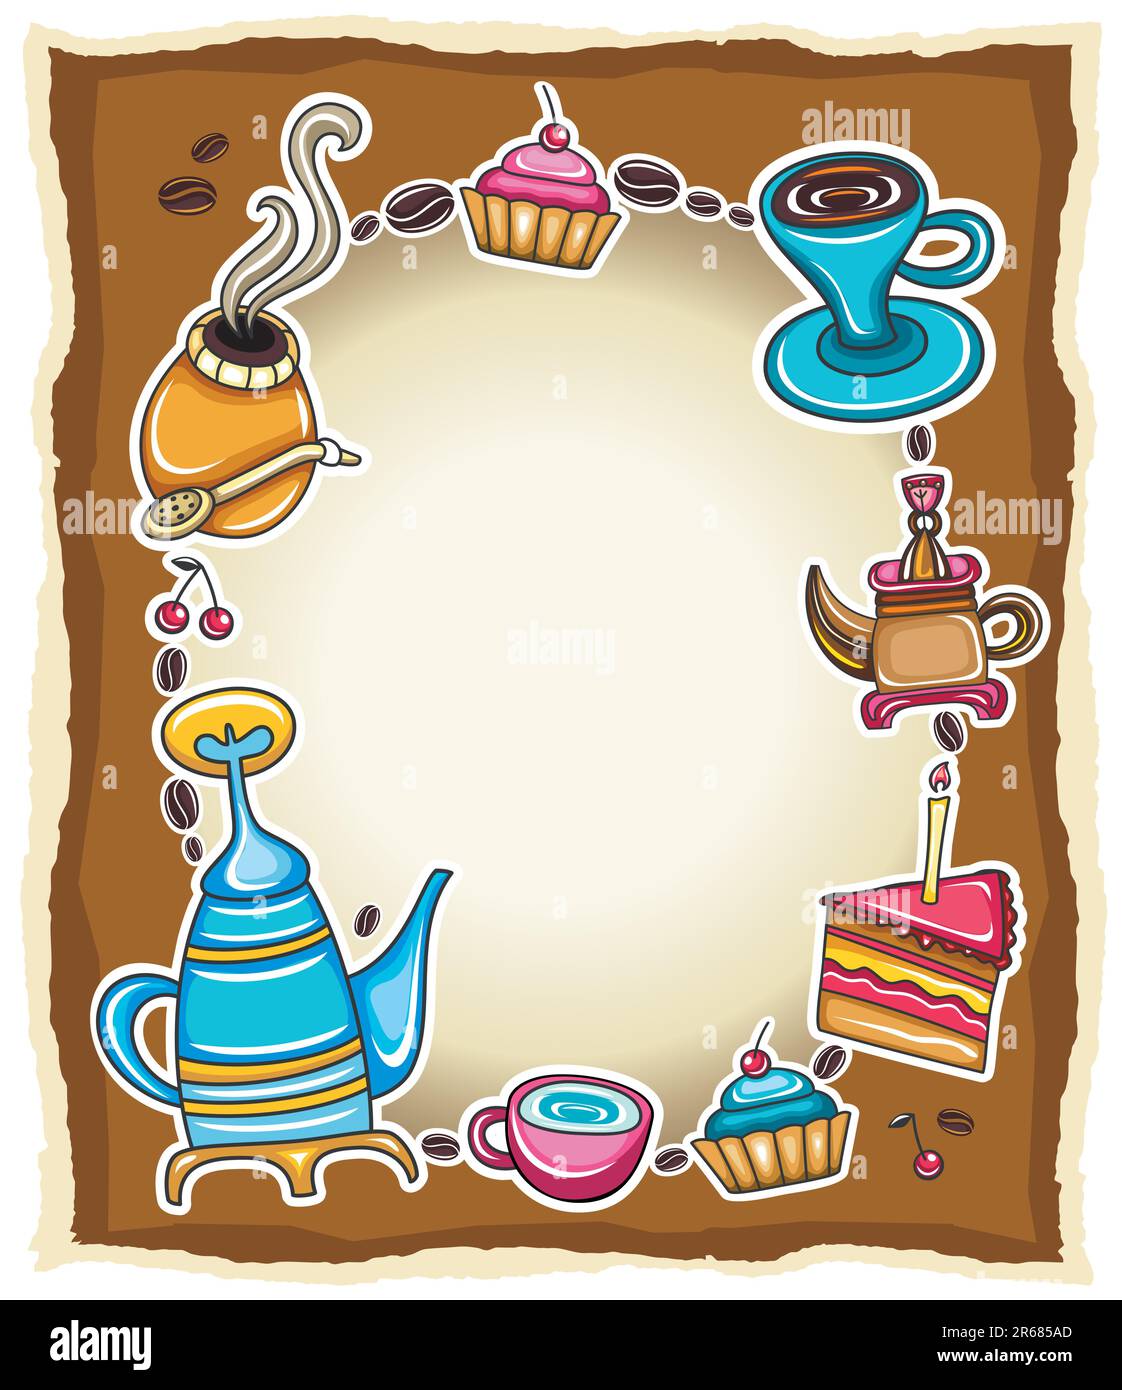 Graziosa cornice grunge con caffè, tè, torta, simboli yerba mate, isolata su sfondo di legno. Illustrazione Vettoriale